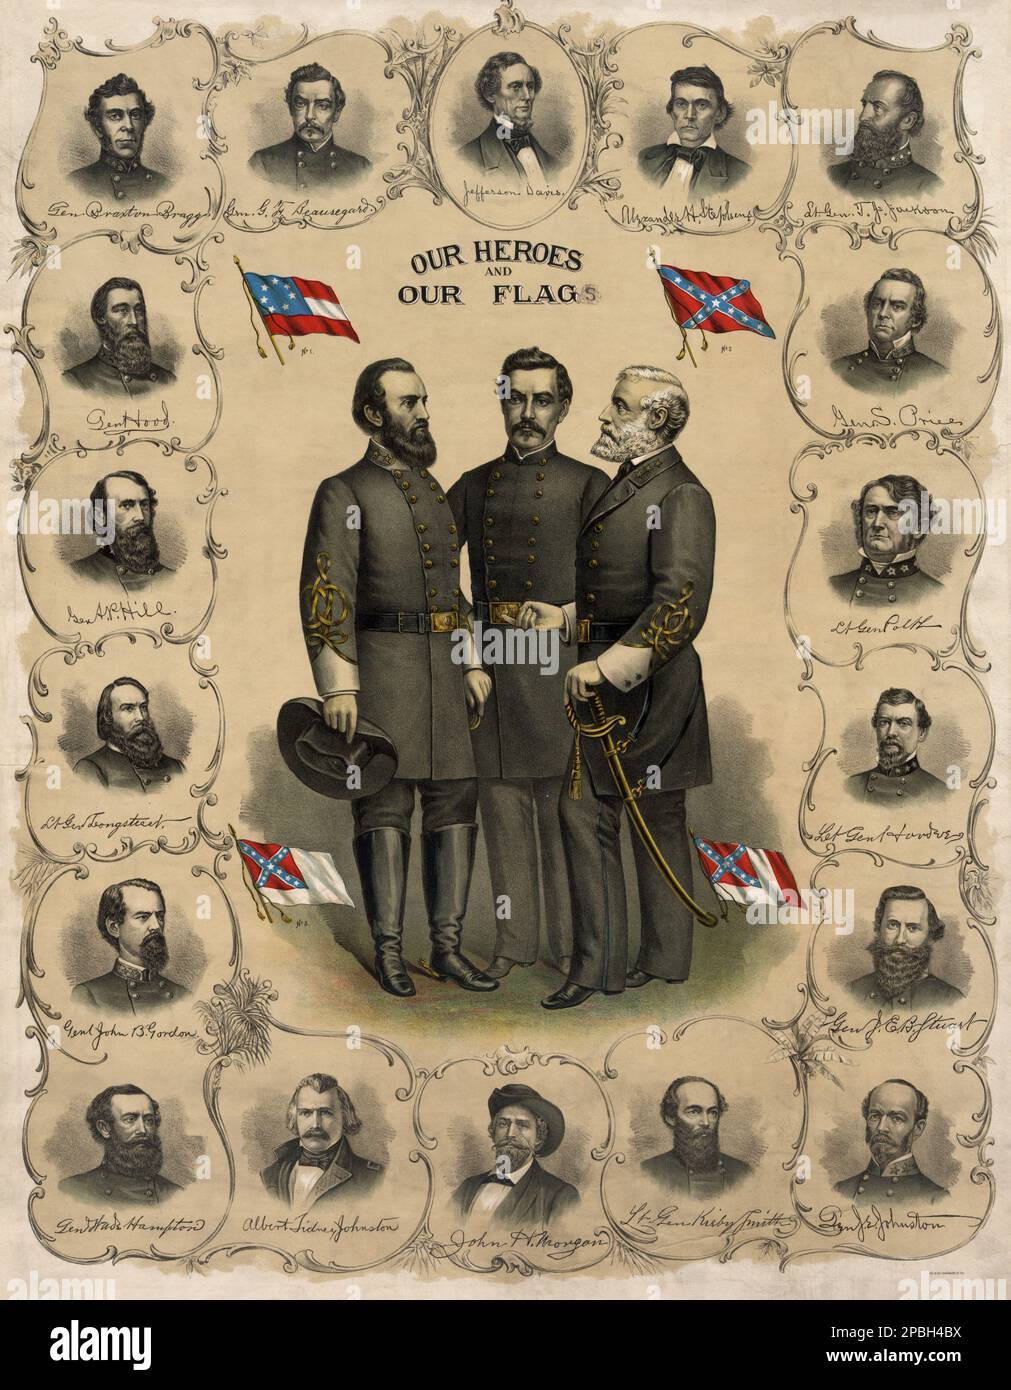 "Unsere Helden und unsere Flagge". Lithography 1896 von Southern Lithograph Co. Aufdruck mit Porträts von Robert E. Lee, Stonewall Jackson und G.T. Beauregard mit vier Versionen der Flagge der Konföderierten, umgeben von Büstenporträts von Jefferson Davis und Offizieren der Konföderierten Armee. General ROBERT E. LEE ( 1807 - 1870 ) der Konföderierten Armee . Lee war Offizier der US-Armee, Ingenieur und einer der berühmtesten Generäle in der amerikanischen Geschichte. SEZESSIONSKRIEG BÜRGERMEISTER GUERRA CIVILE DI SECESSIONE AMERICANA cappello - hat - uomo anziano vecchio - Älterer Mann - Barb Stockfoto